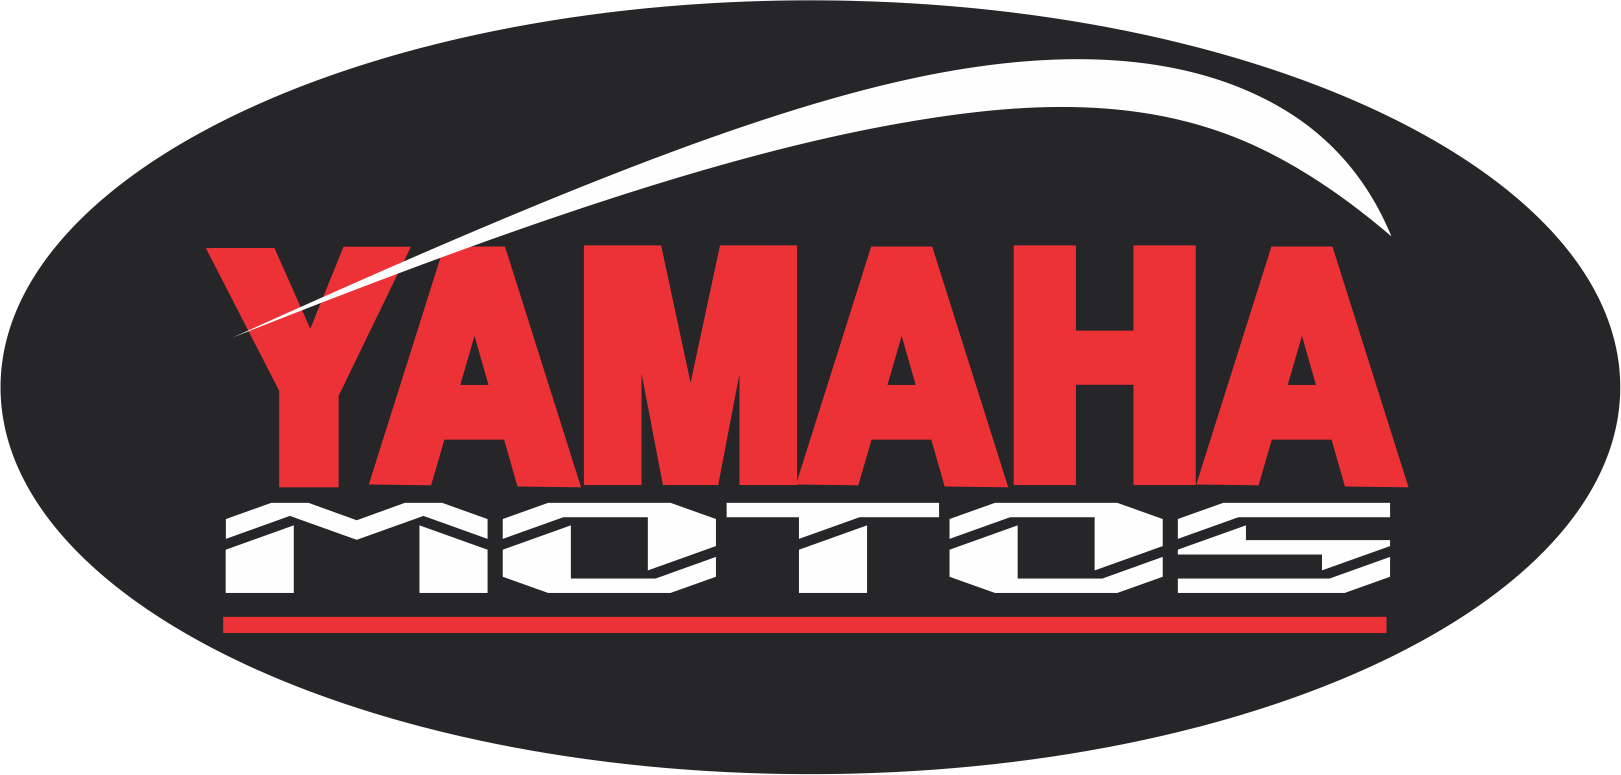 Yamaha Motos Clipart (1621x775), Png Download